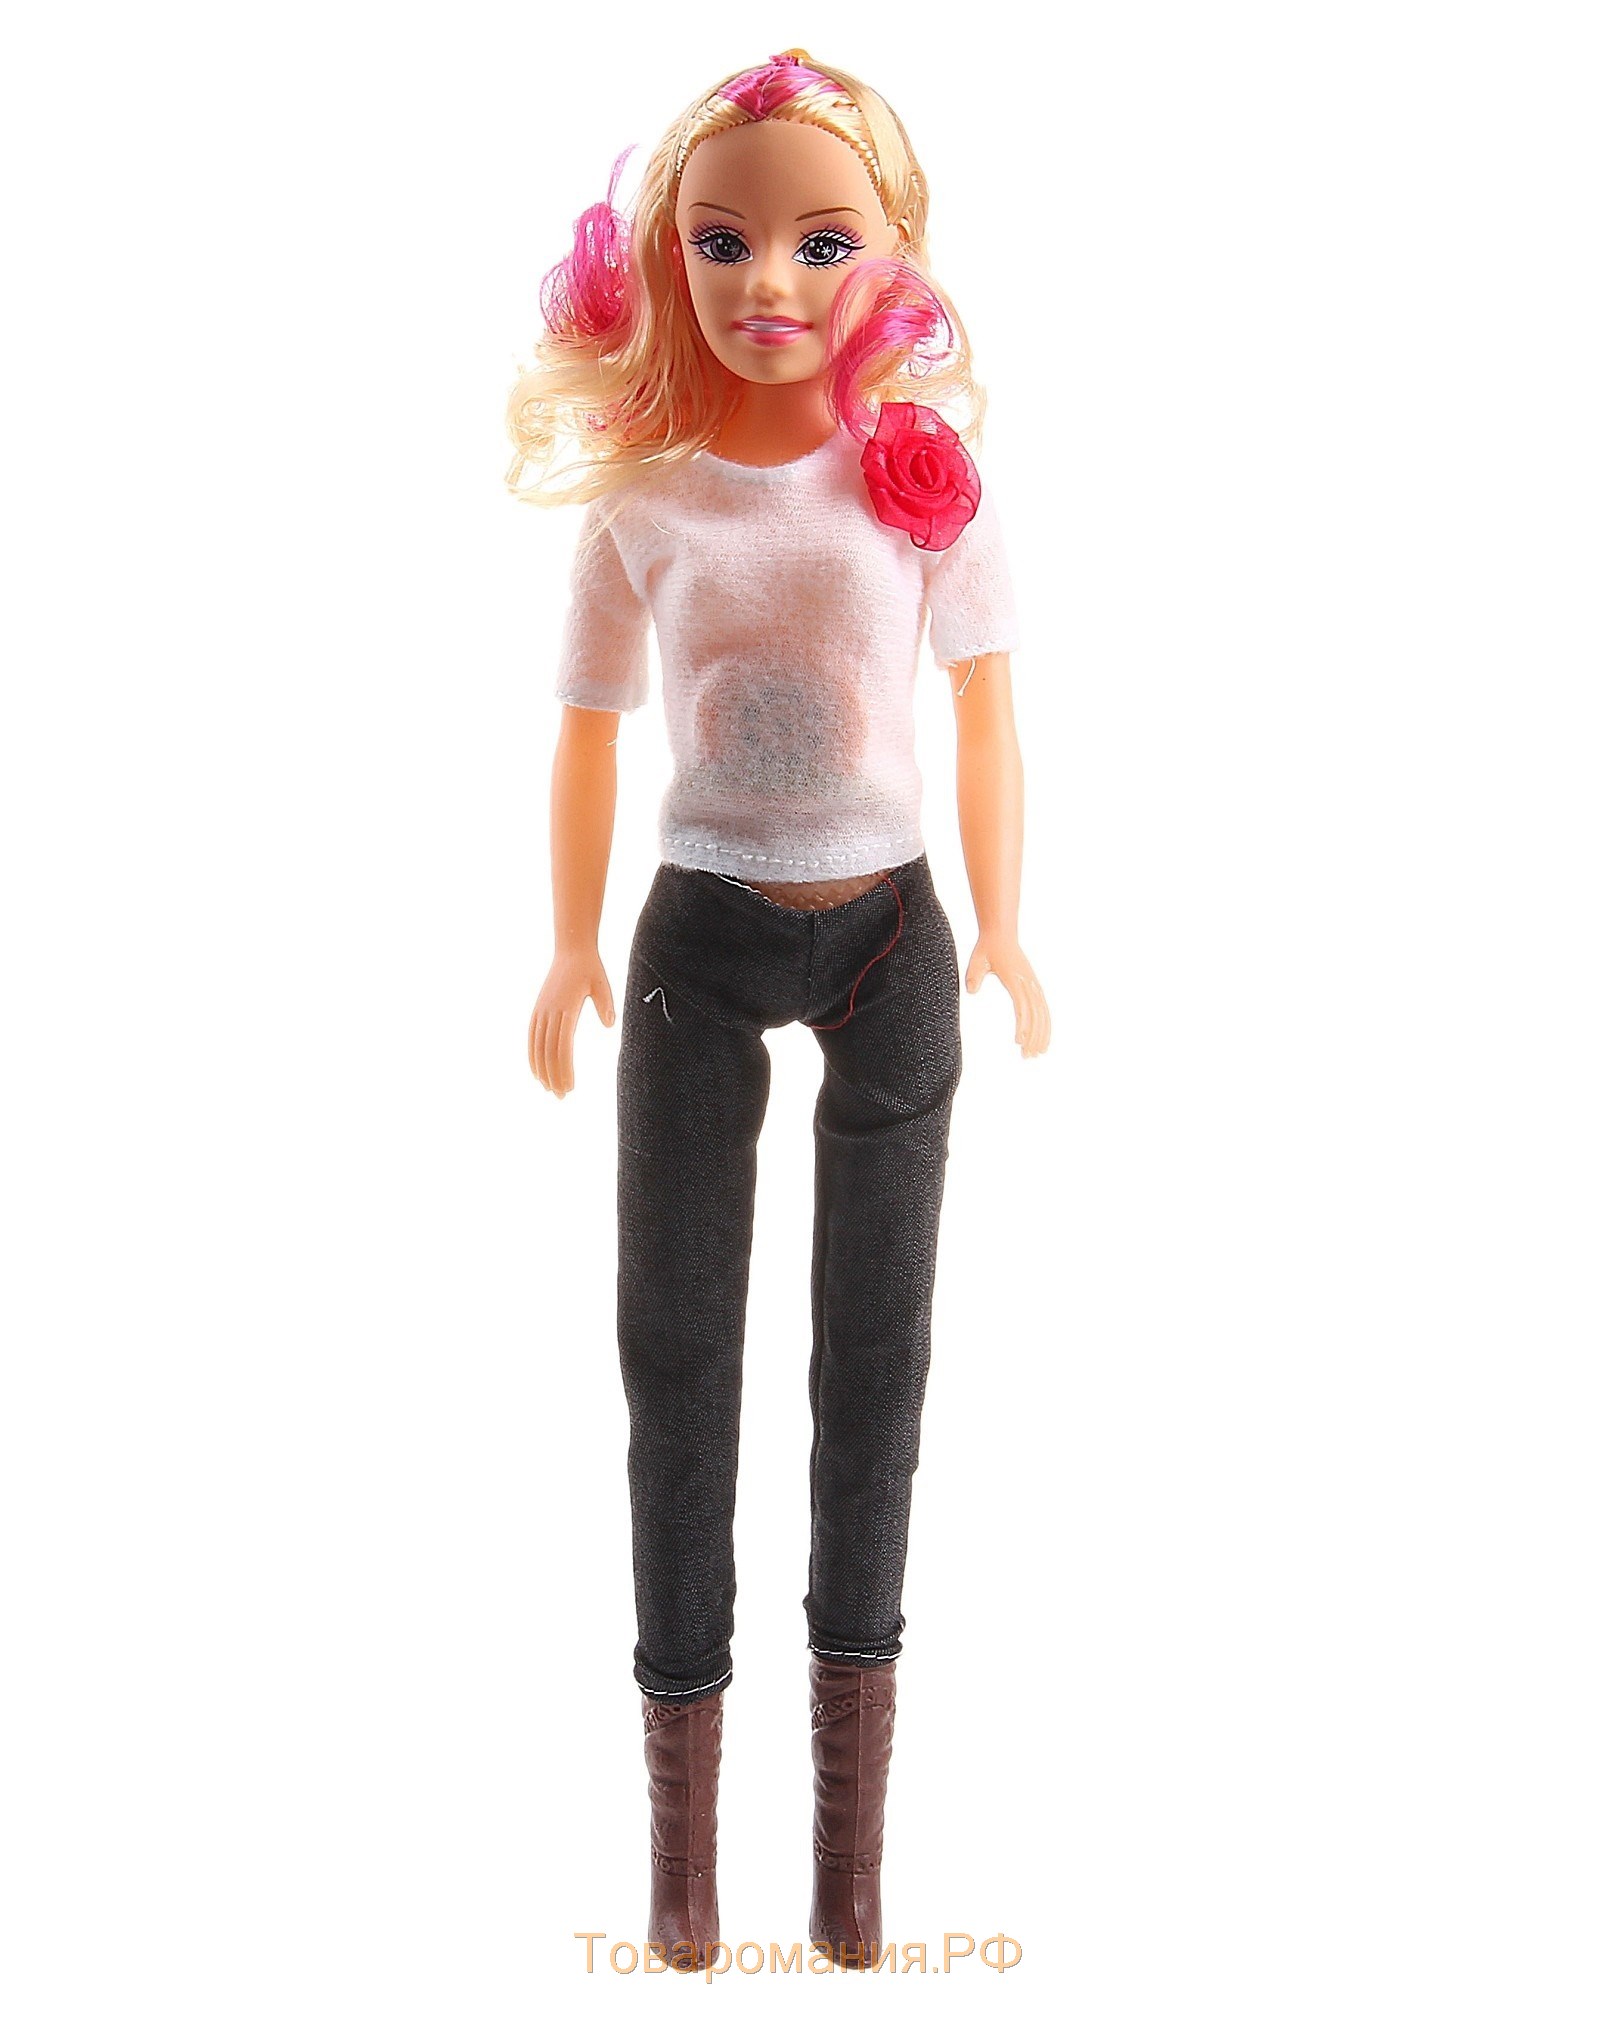 Кукла «Лаура» в модной одежде, русская озвучка, высота 41 см, МИКС